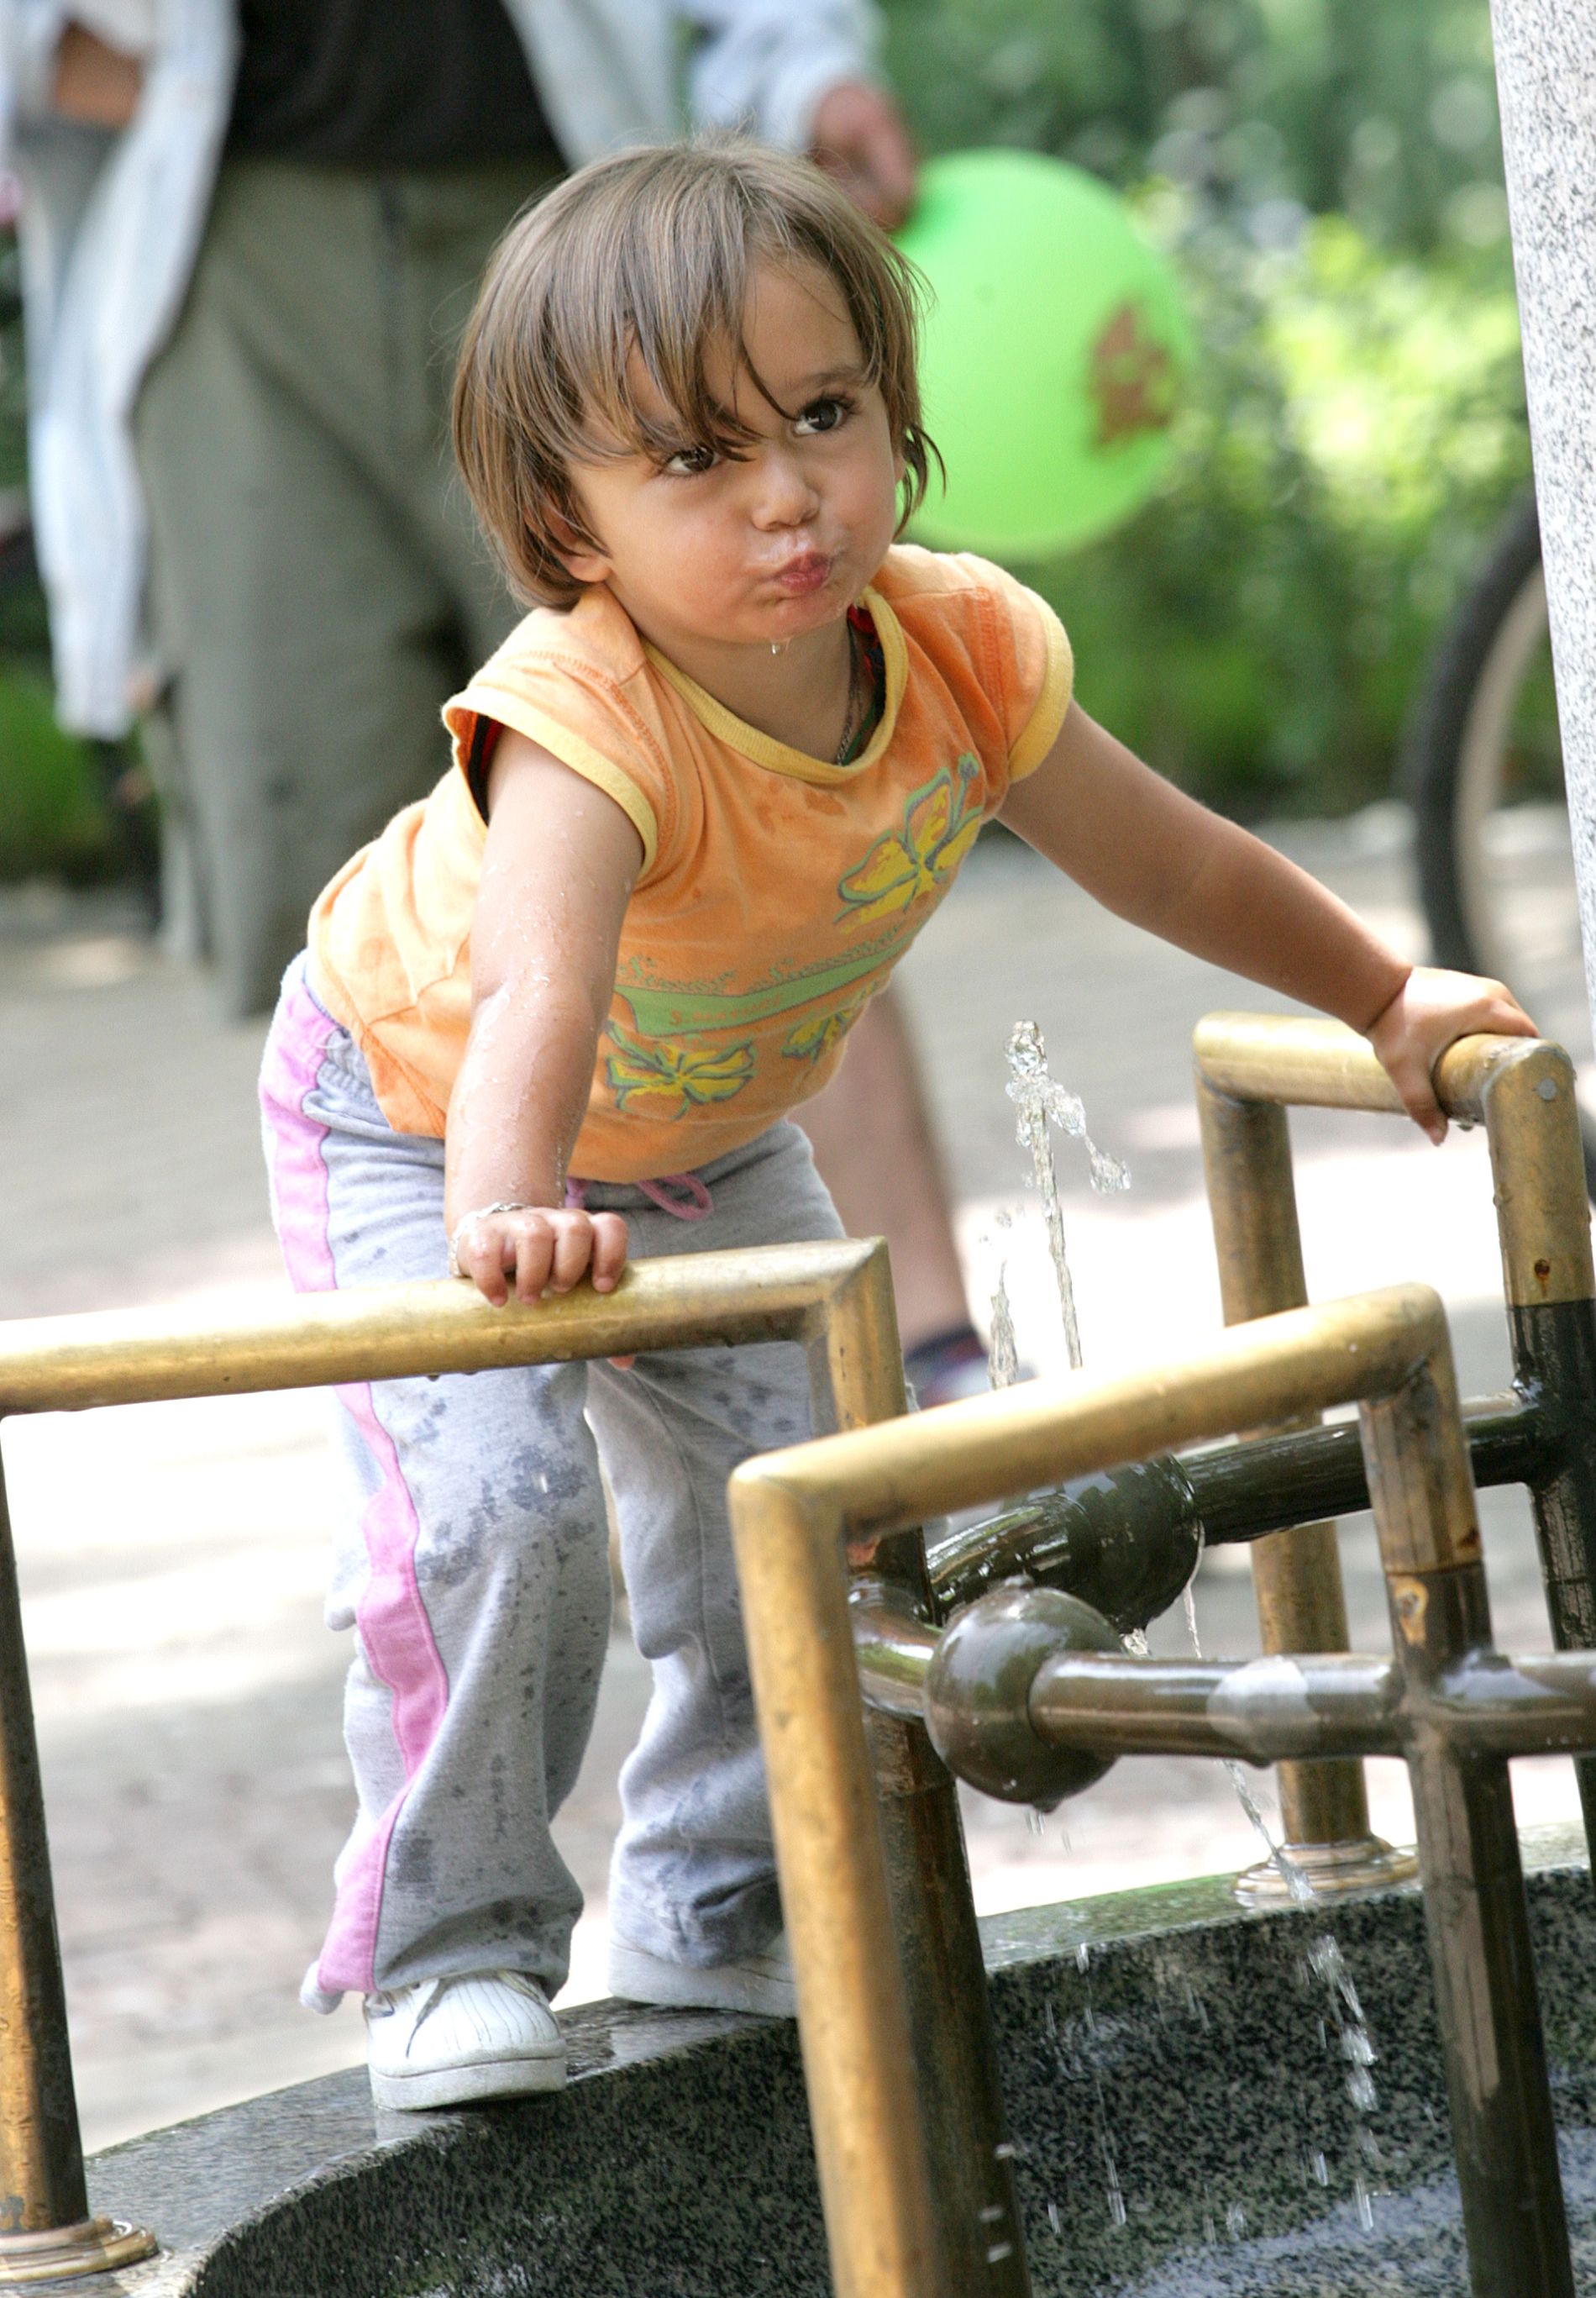 Децата имат навика при жажда да търсят вода, за разлика от възрастните